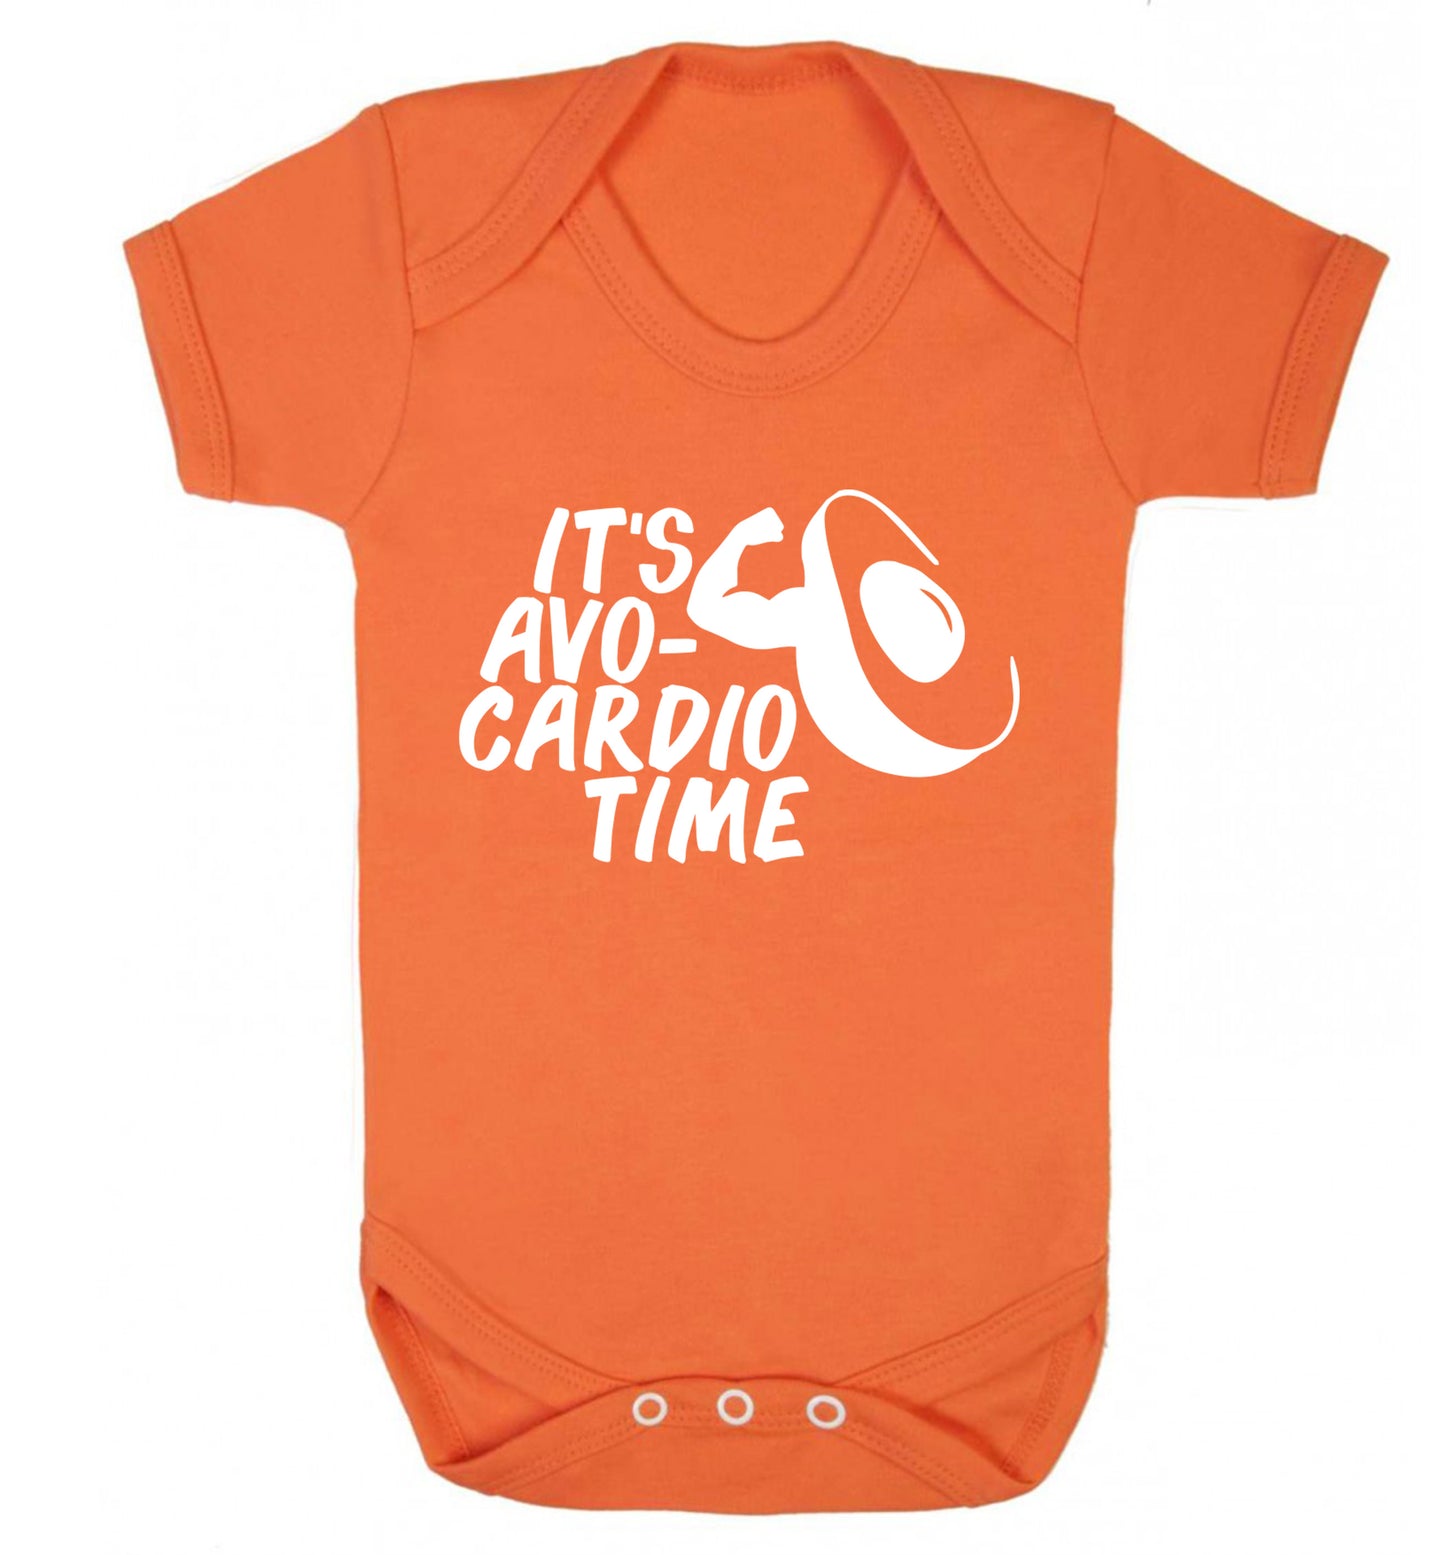 It's avo-cardio time Baby Vest orange 18-24 months